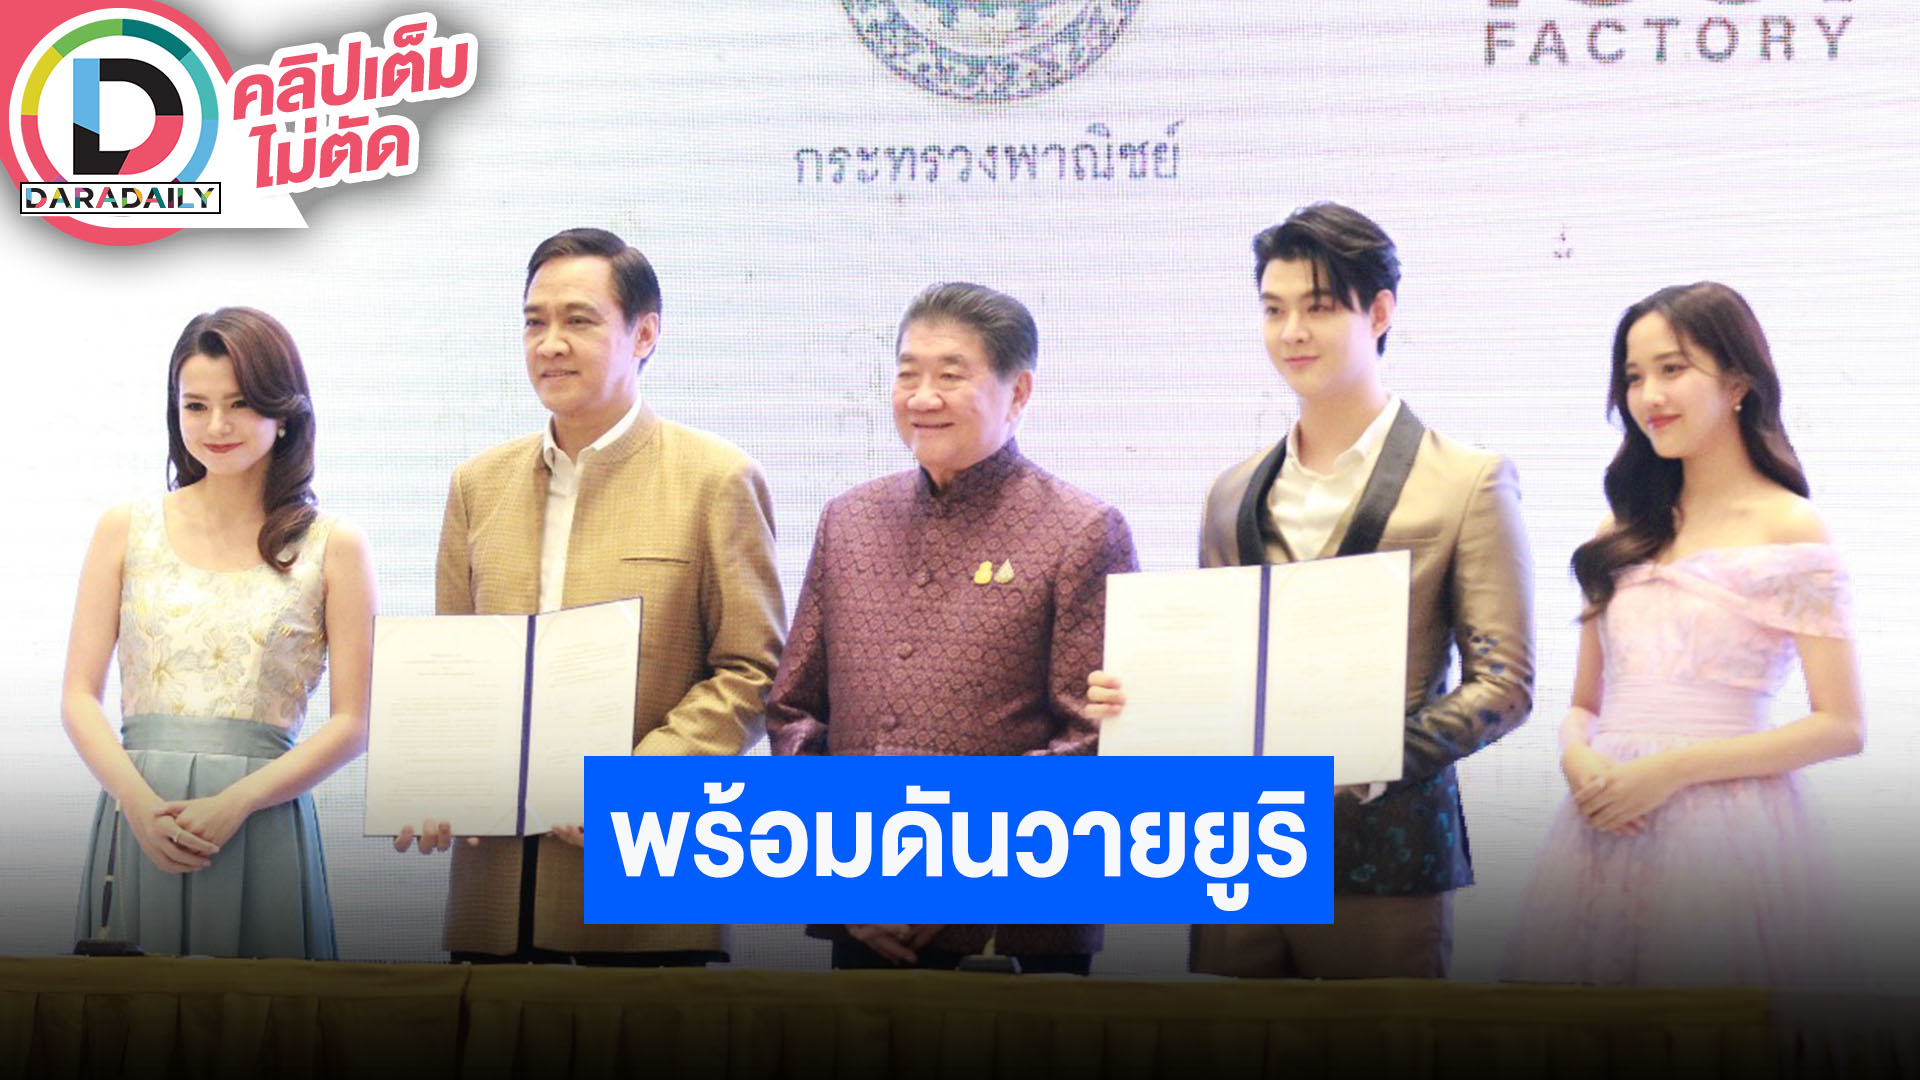 การลงนามบันทึกแสดงเจตจำนงความร่วมมือ“การผลักดันสินค้าและบริการไทยสู่สากลผ่านซีรีส์ยูริ”